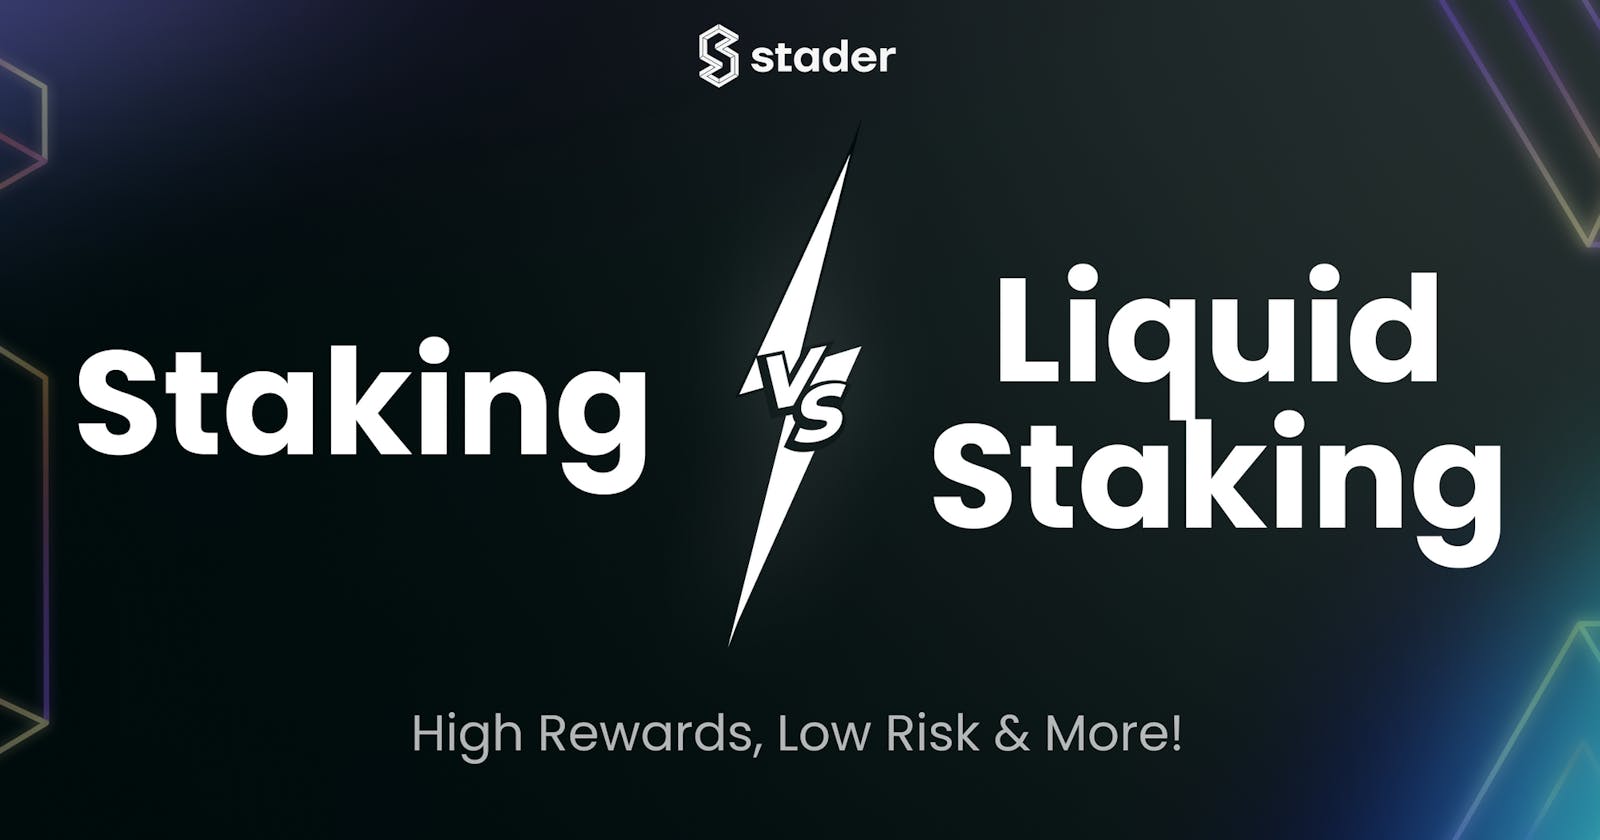 Direct Staking vs Liquid Staking